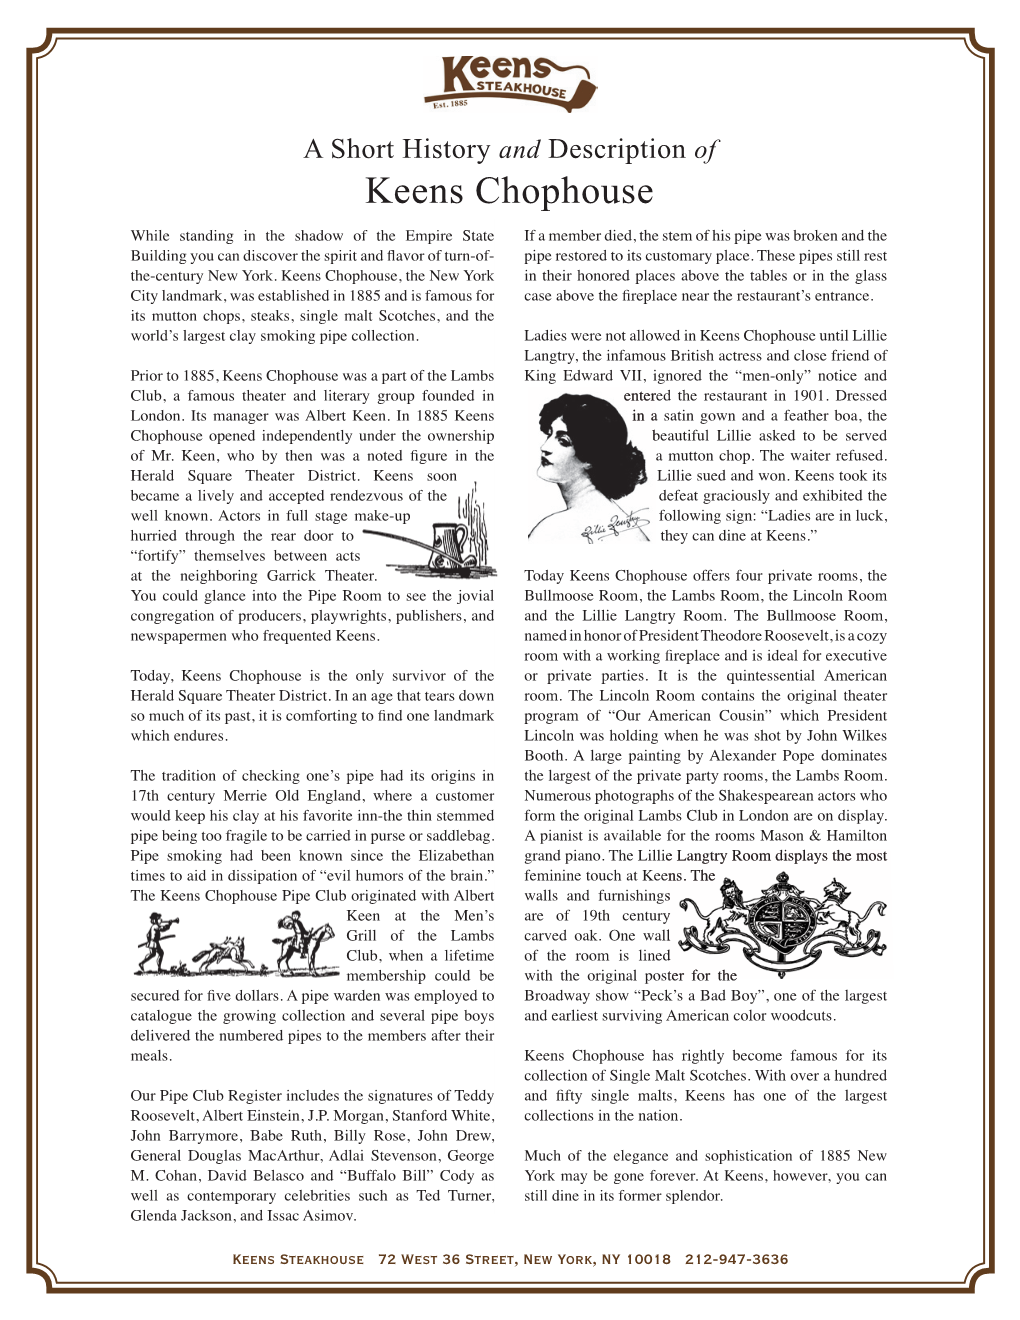 Keens Chophouse